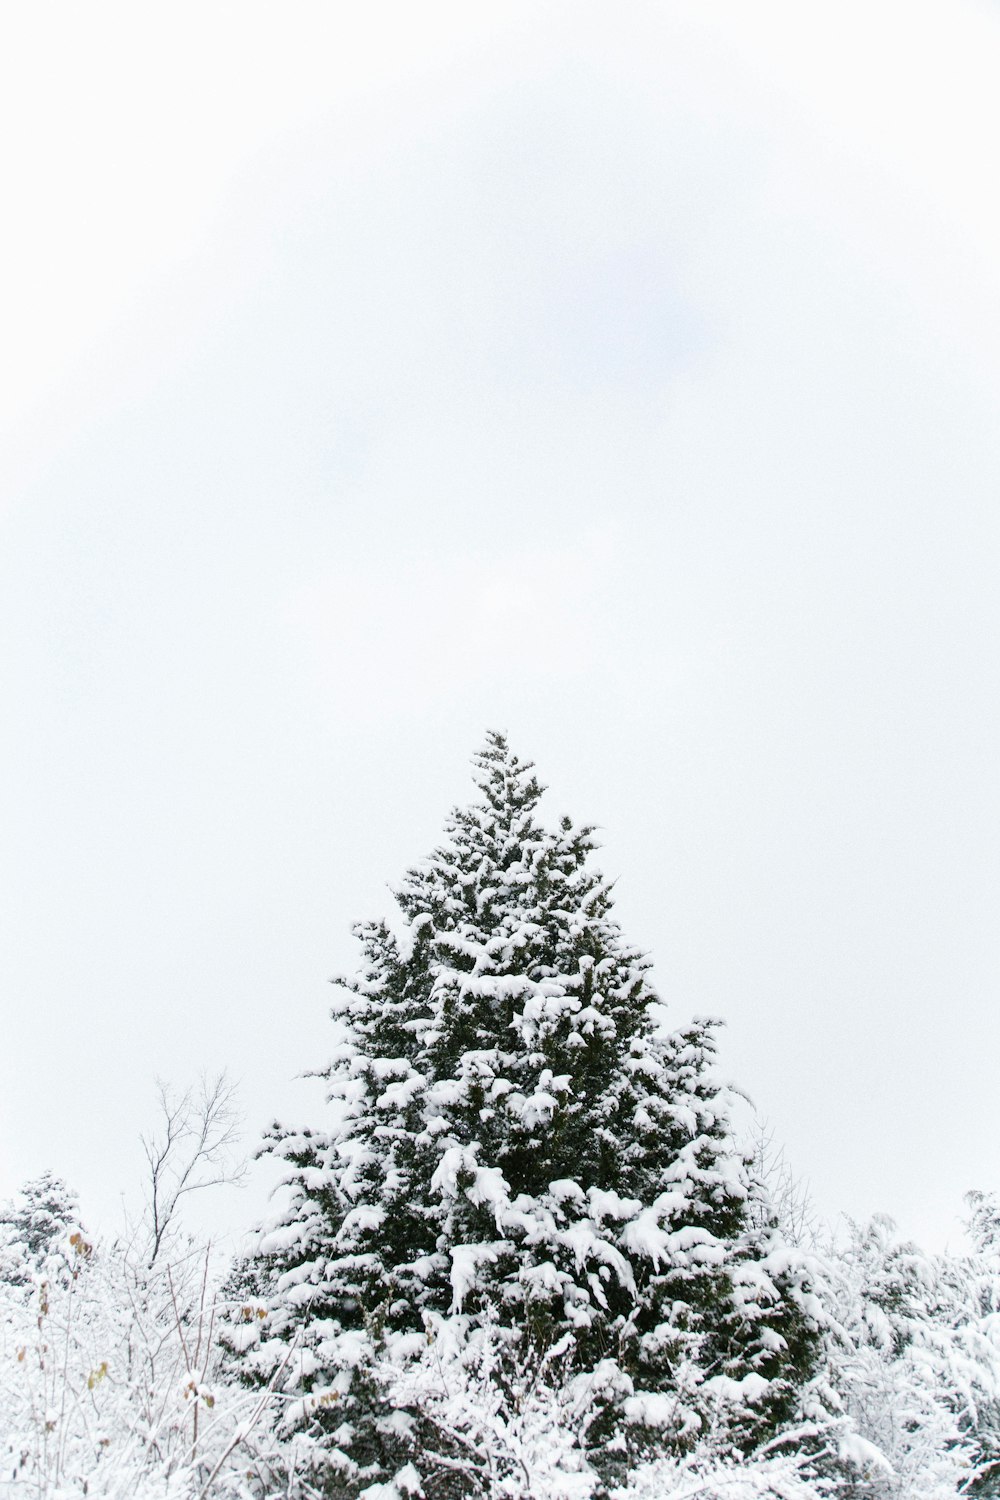 Die Spitze eines mit Schnee bedeckten Baumes.